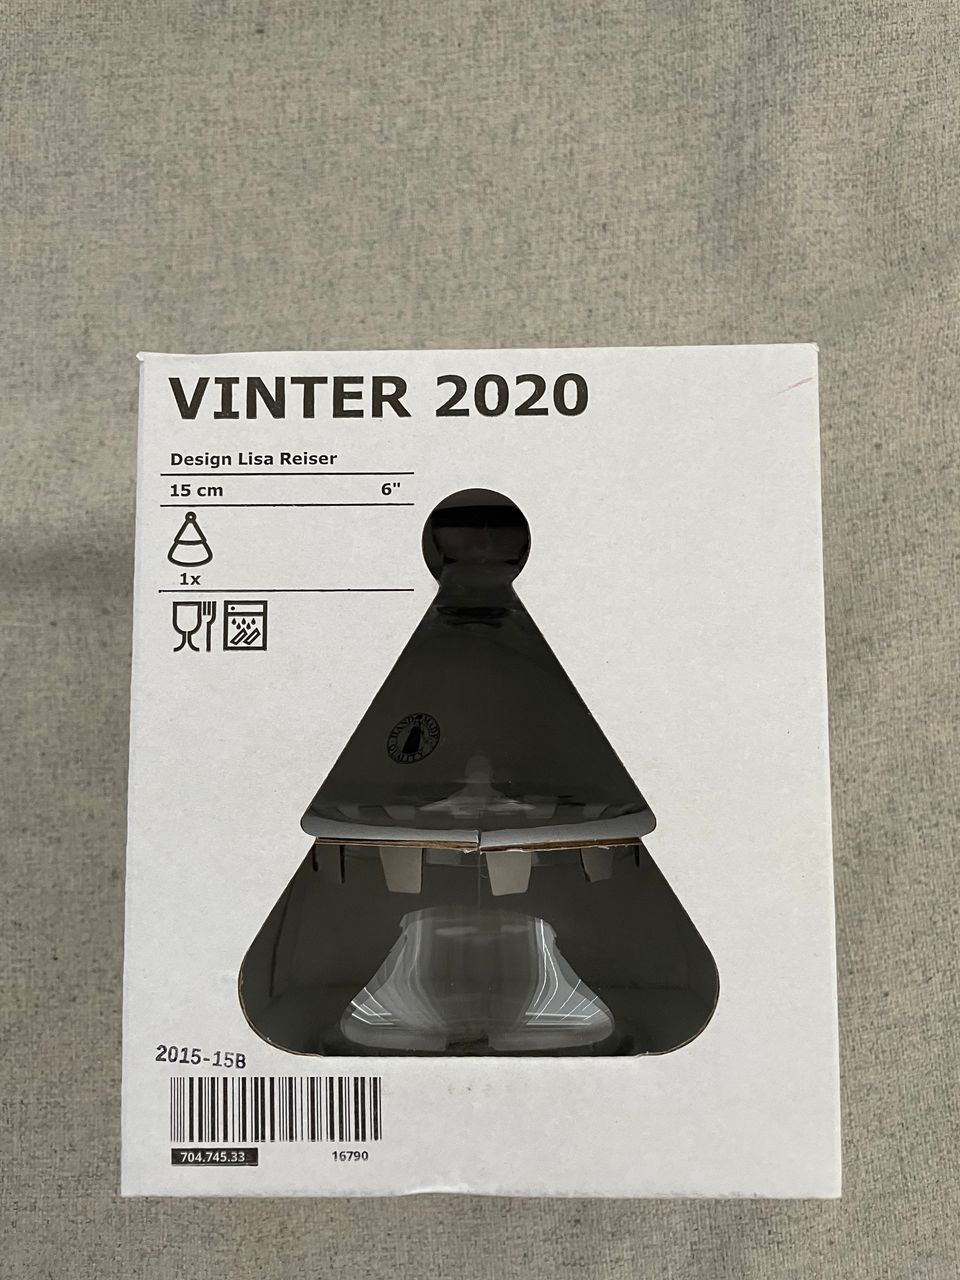 Ikea Vinter 2020